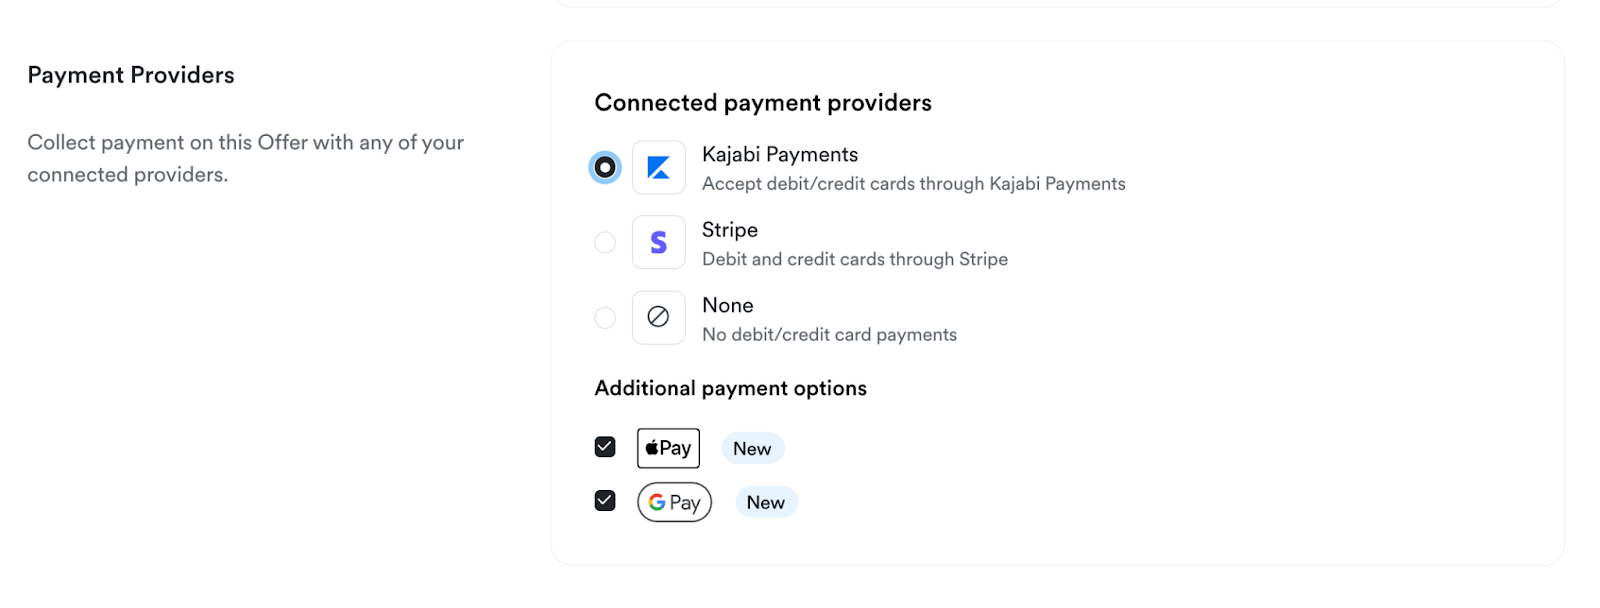 kajabi-payments-google-docs-0.png